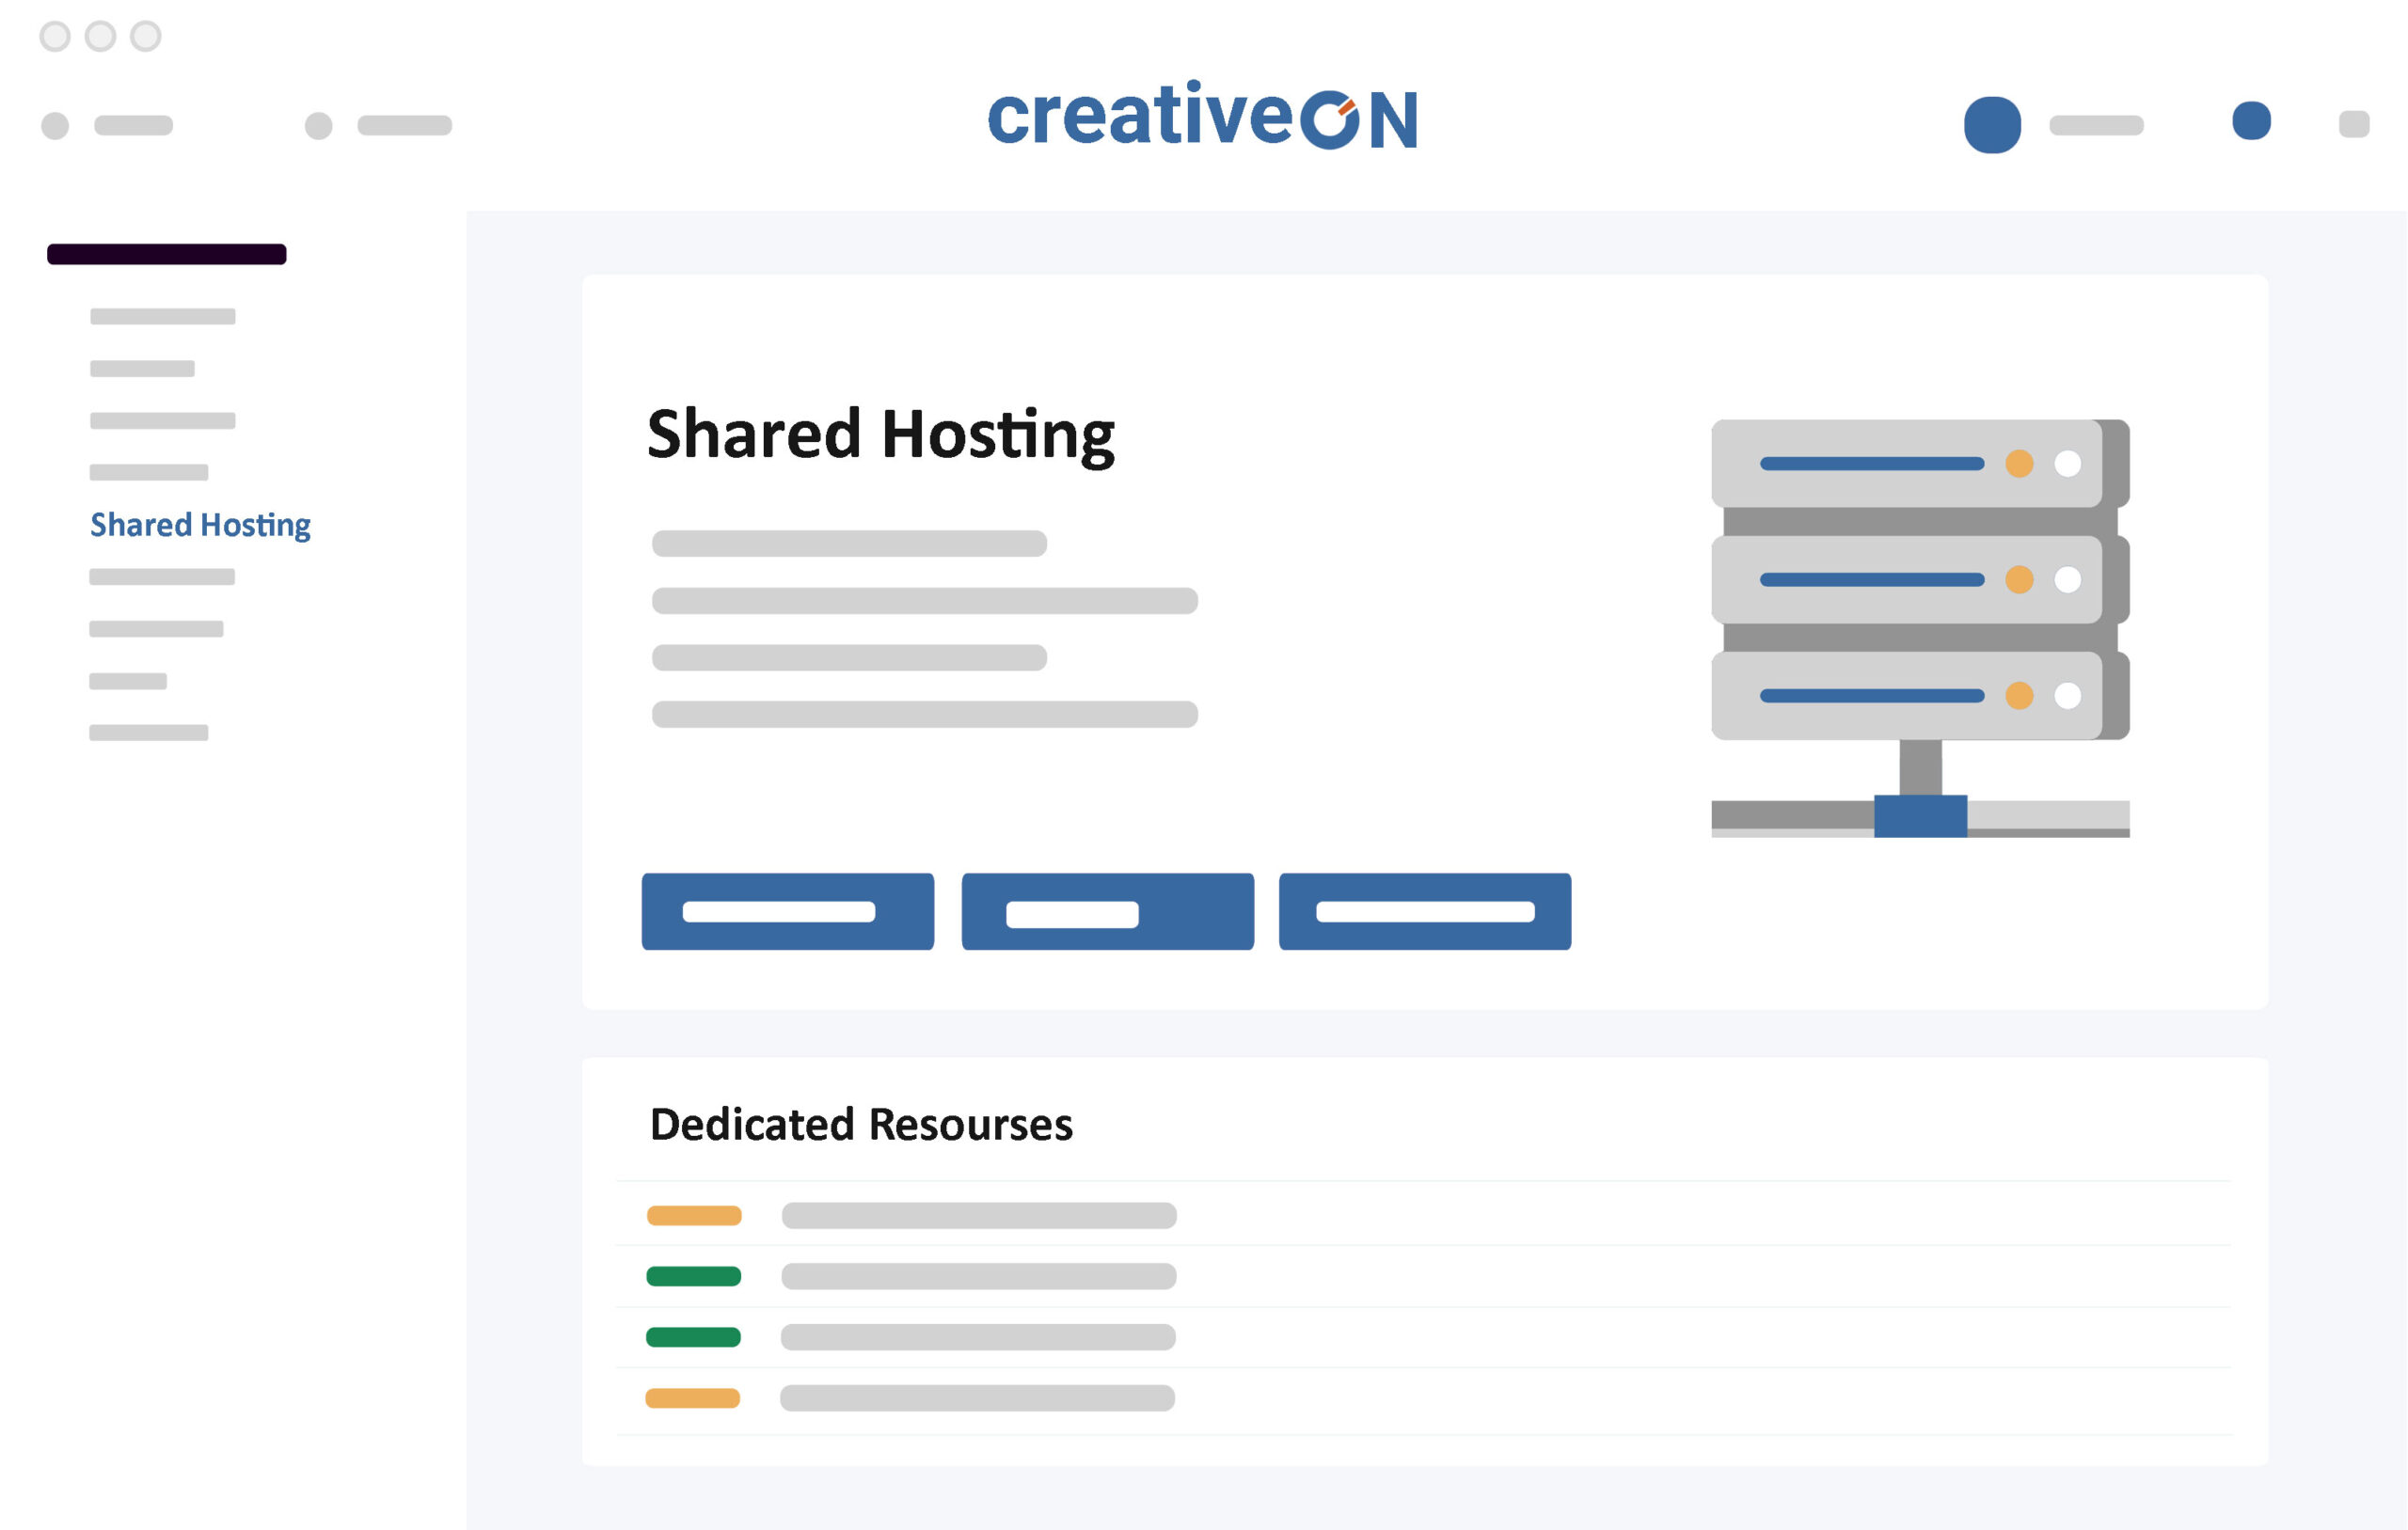 shared-hosting